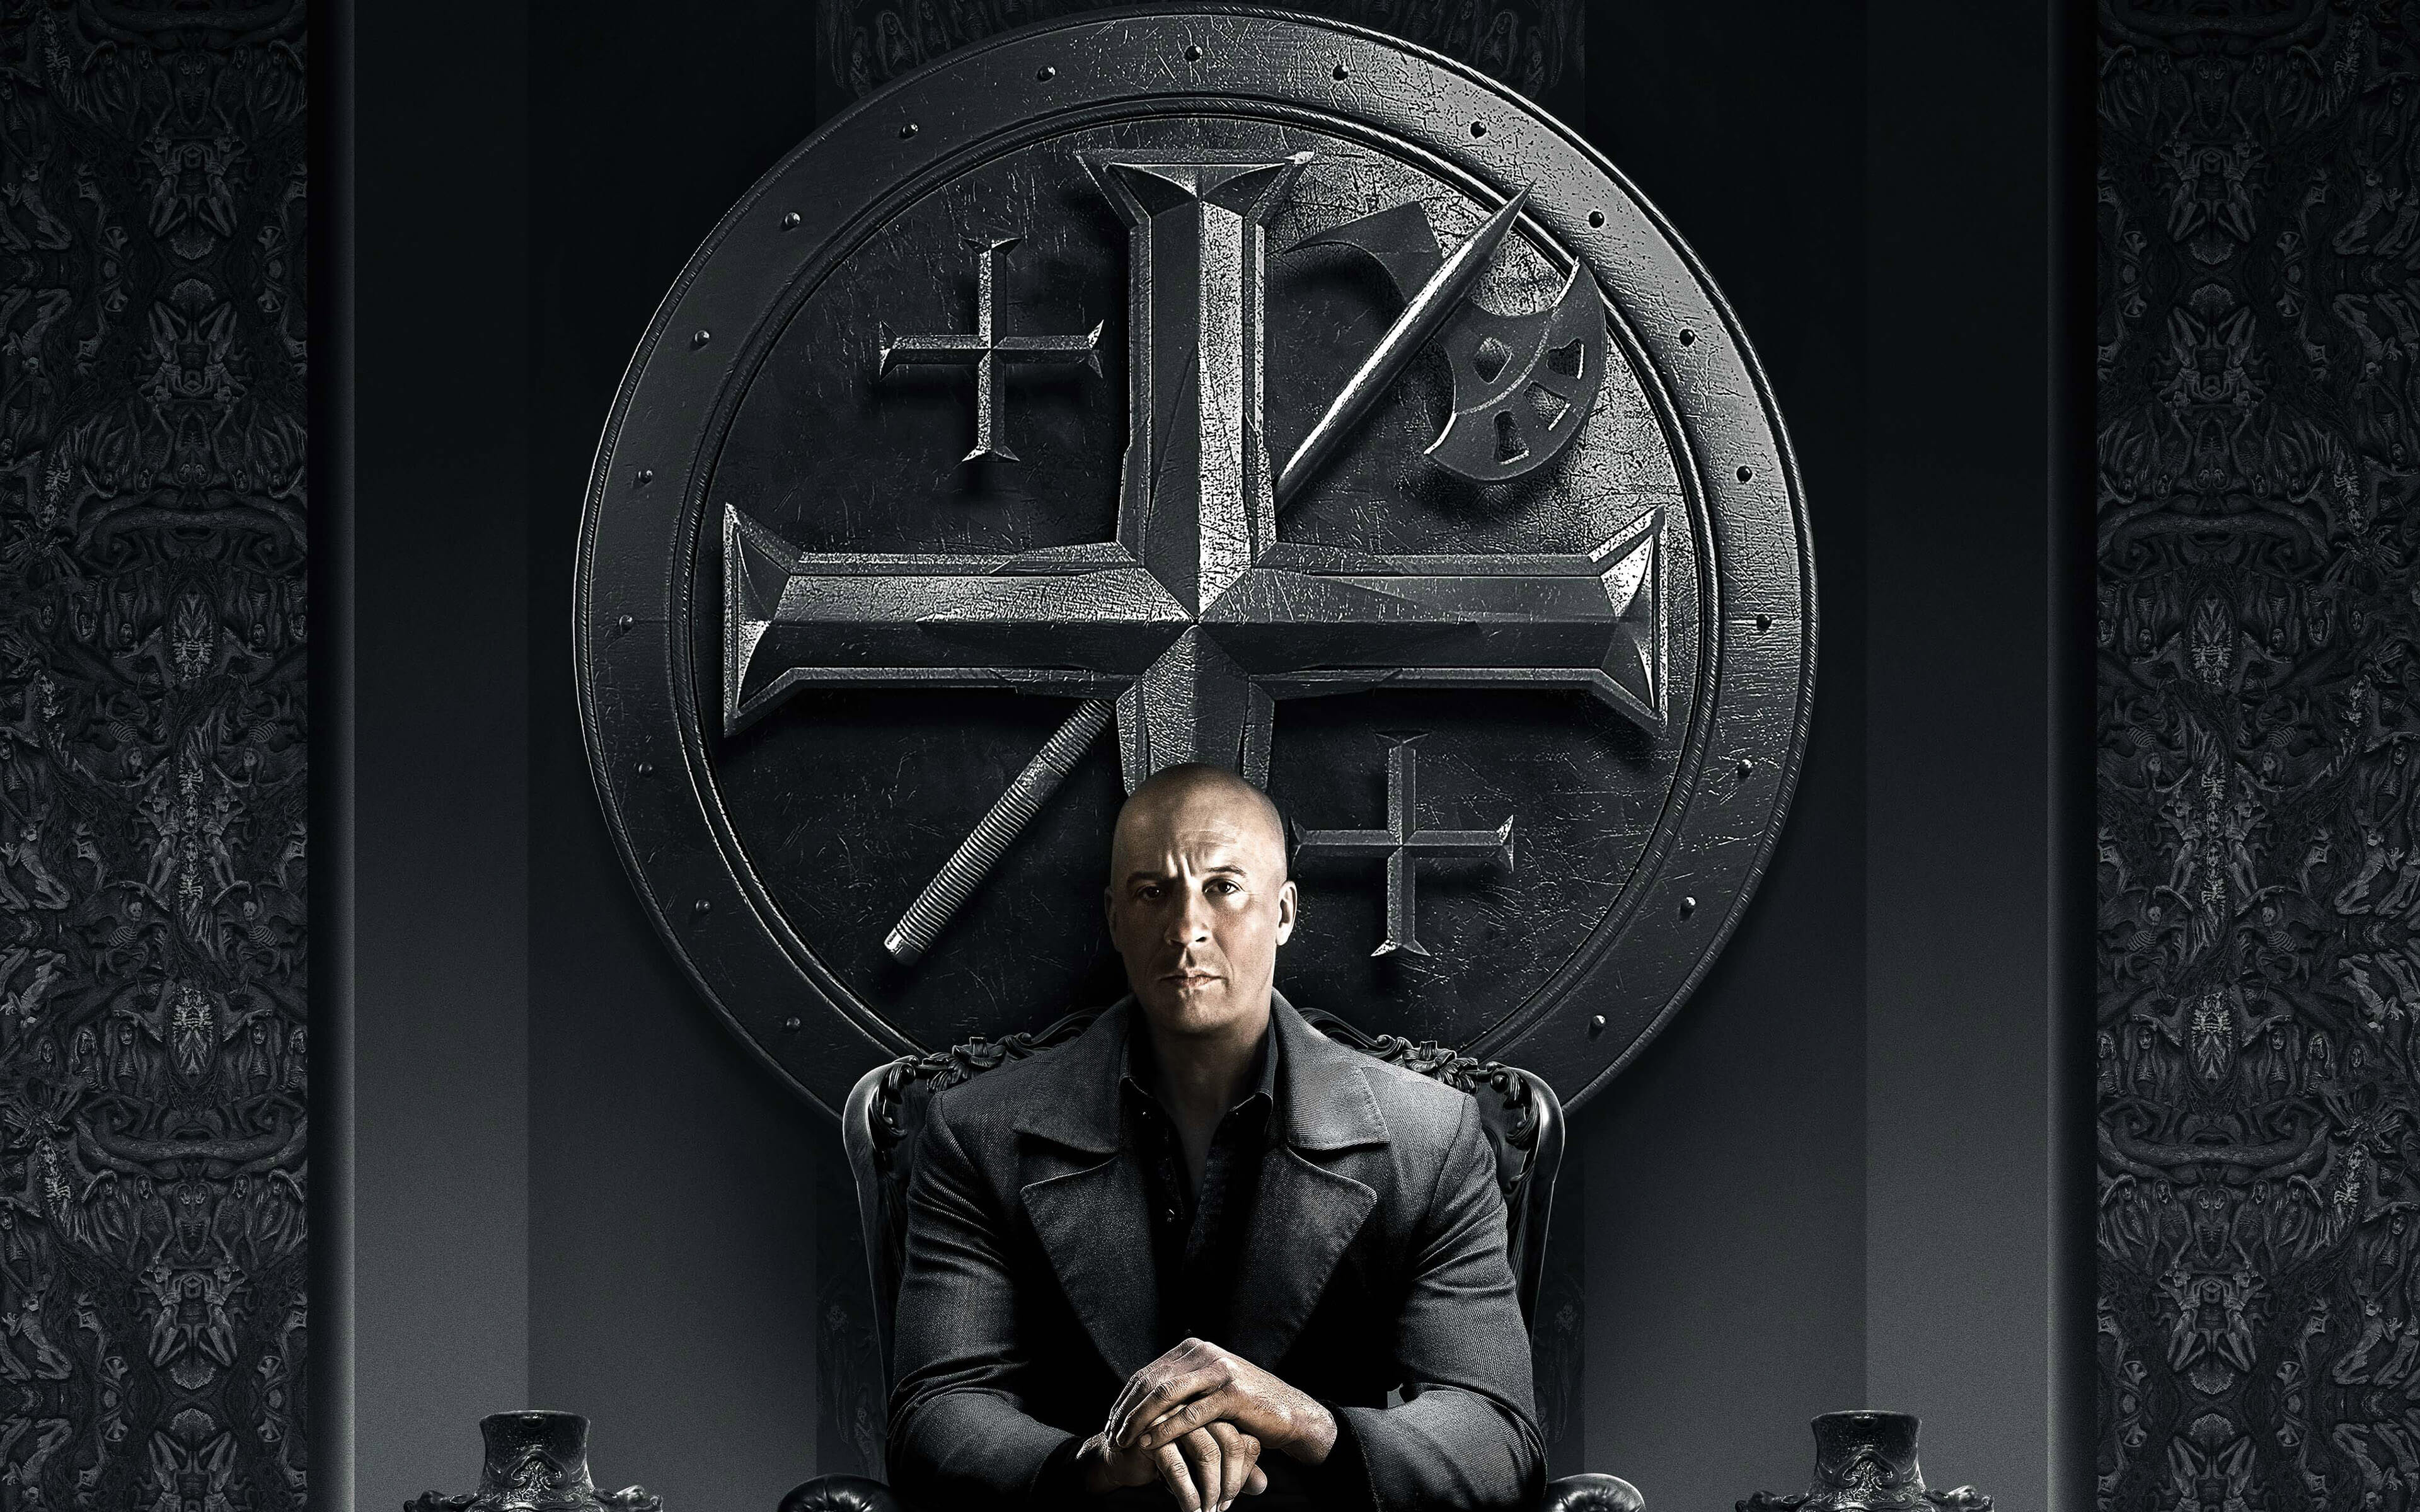 The Last Witch Hunter Vin Diesel (Kaulder) Coat